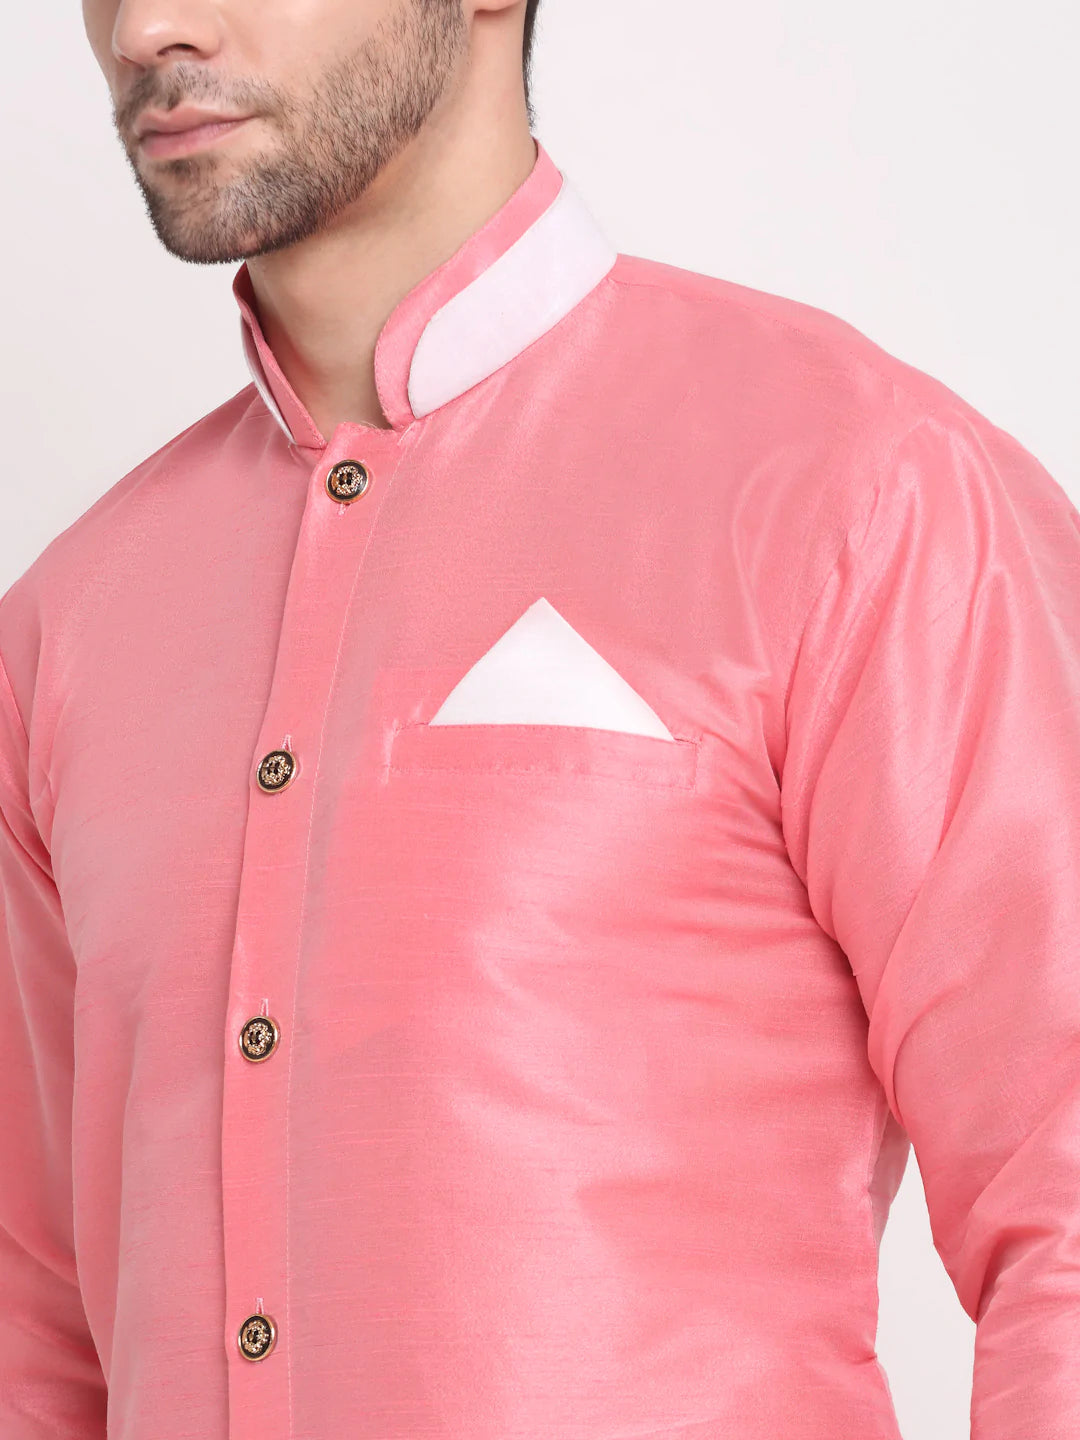 Kalyum Men's Pink Solid Kurta with White Dhoti Pant - Distacart